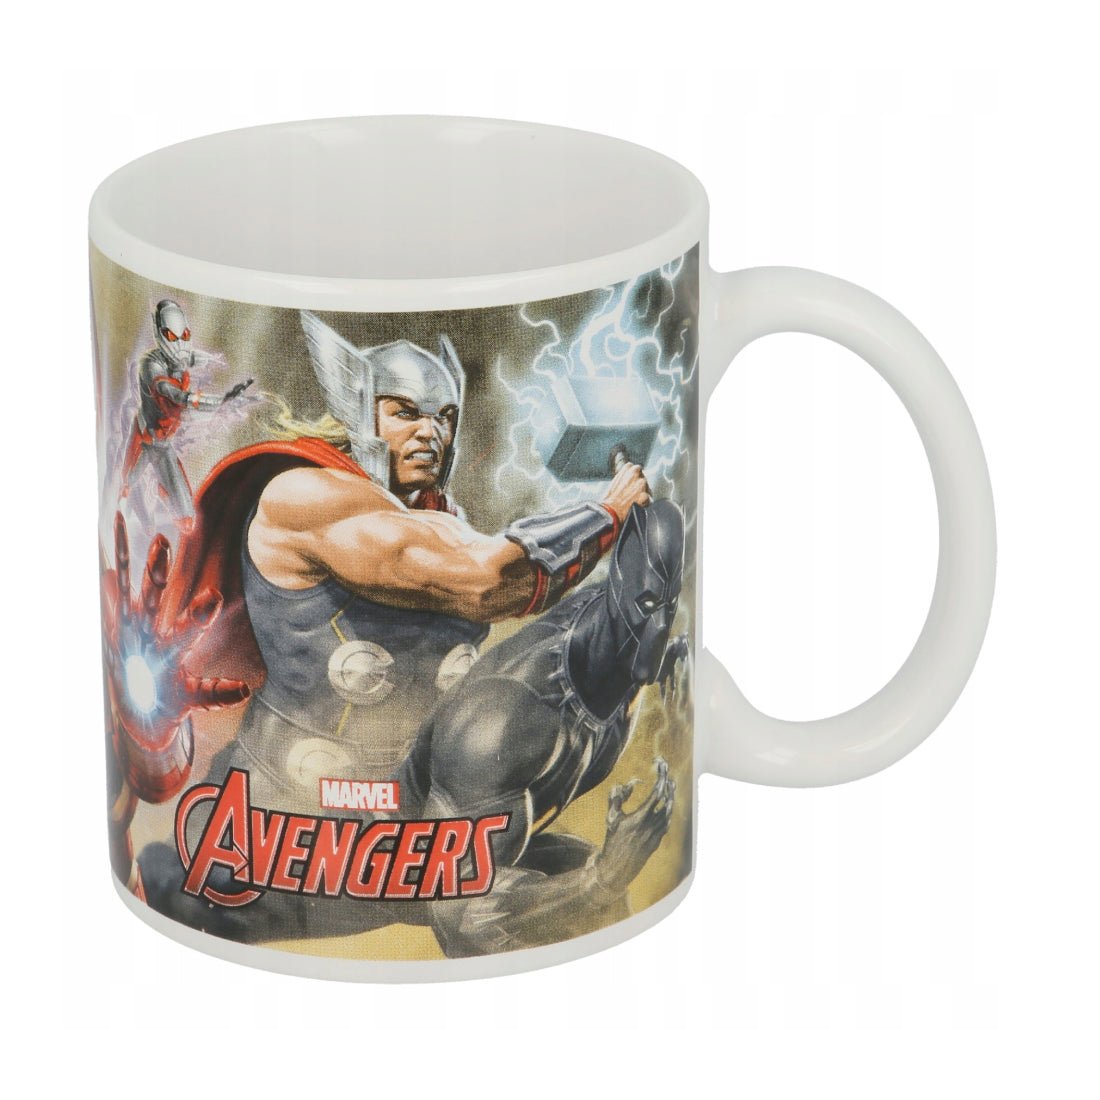 Avengers Ceramic Mug - كأس - Store 974 | ستور ٩٧٤